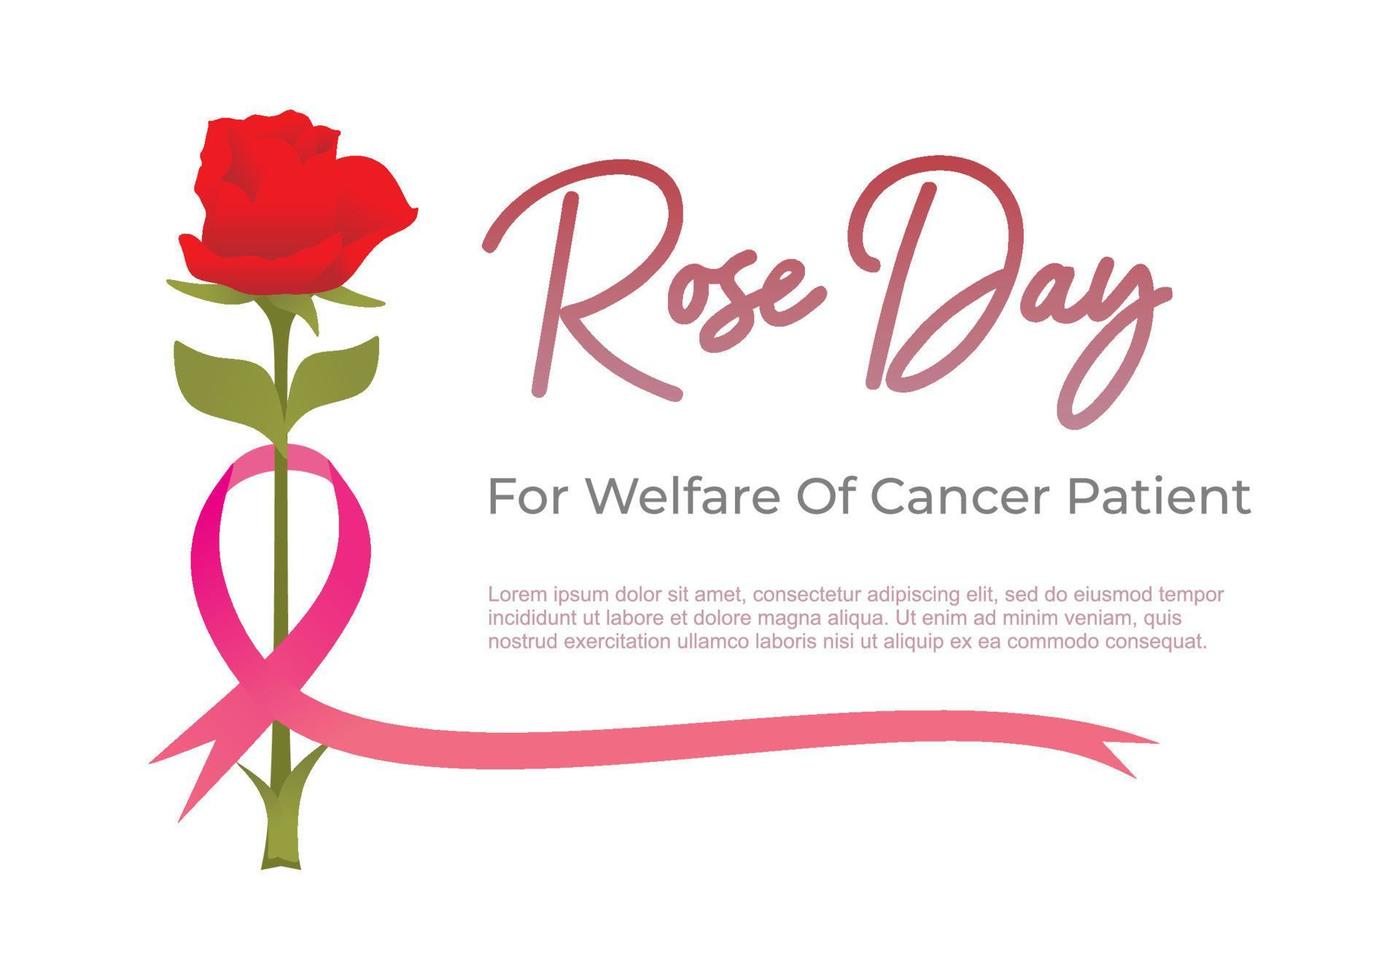 fond de jour rose pour le bien-être de la fleur et du ruban du patient atteint de cancer vecteur